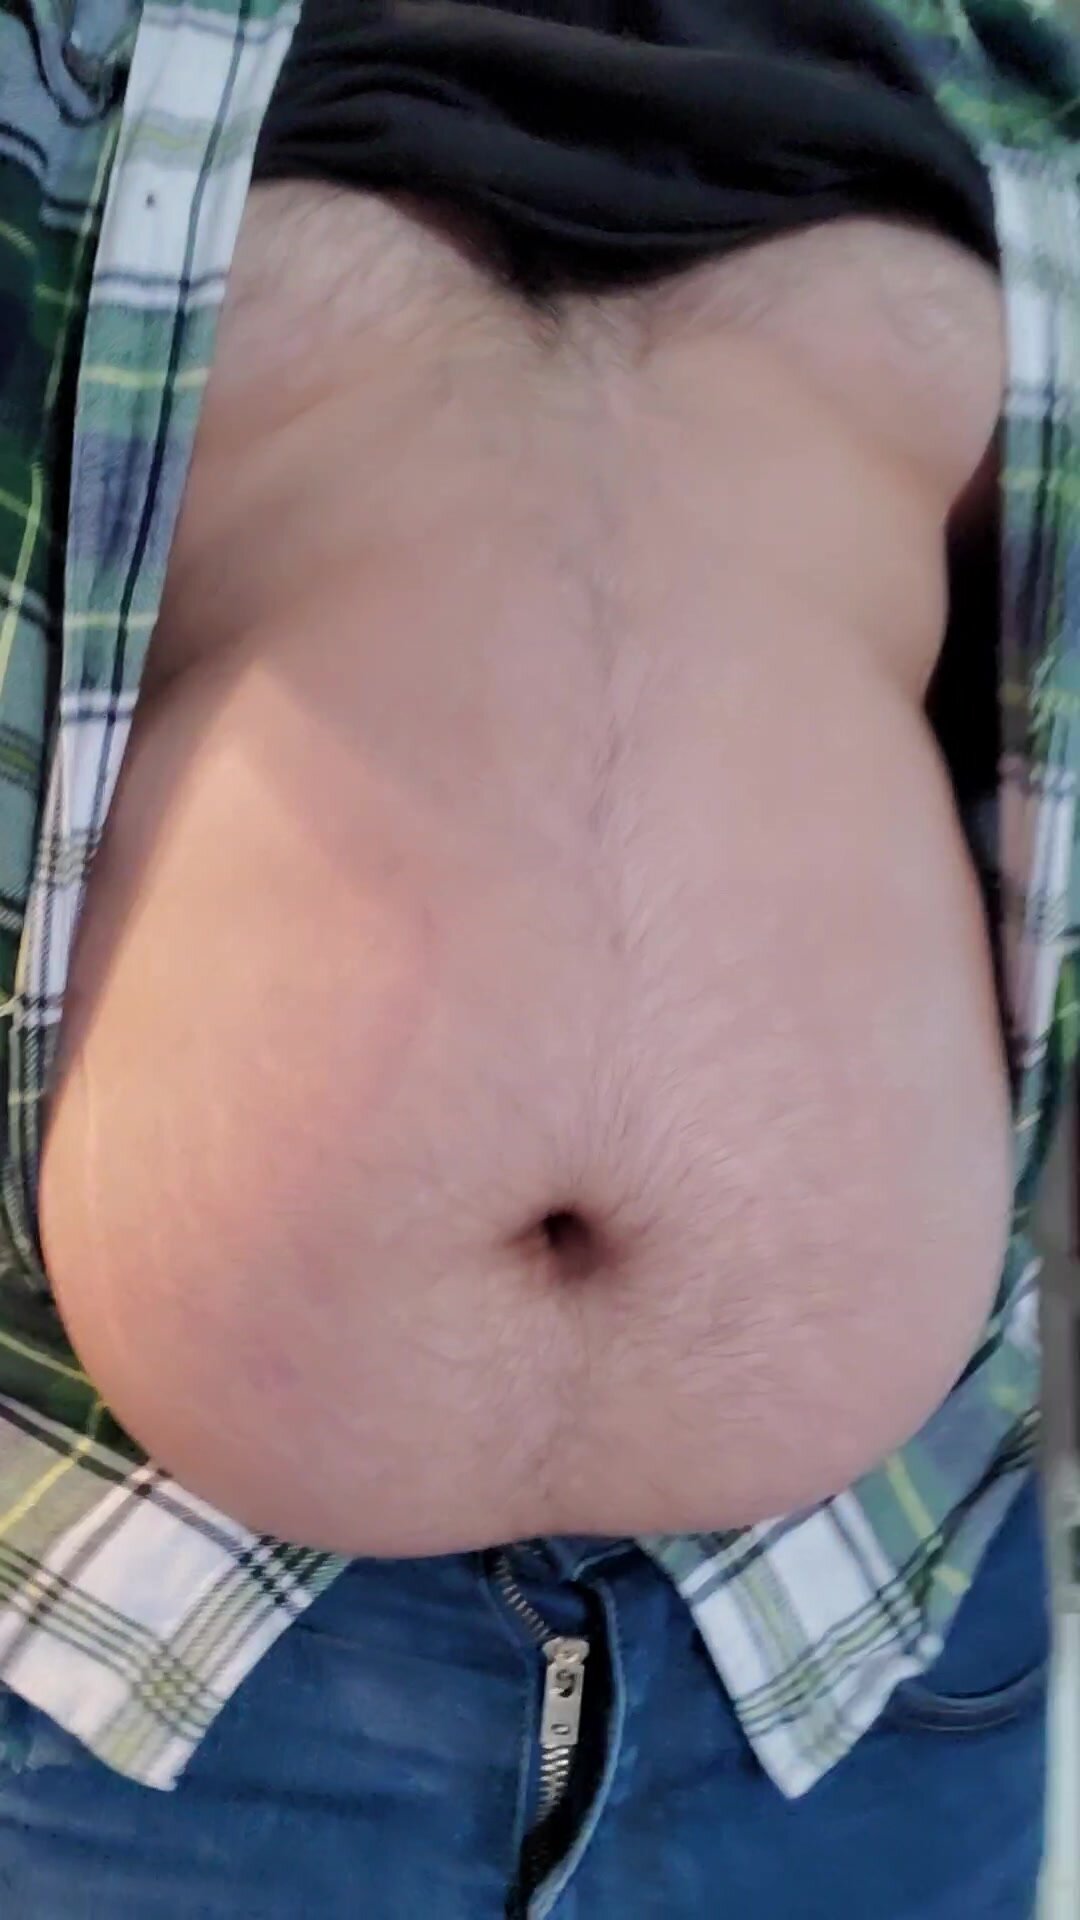 Male fat belly walking